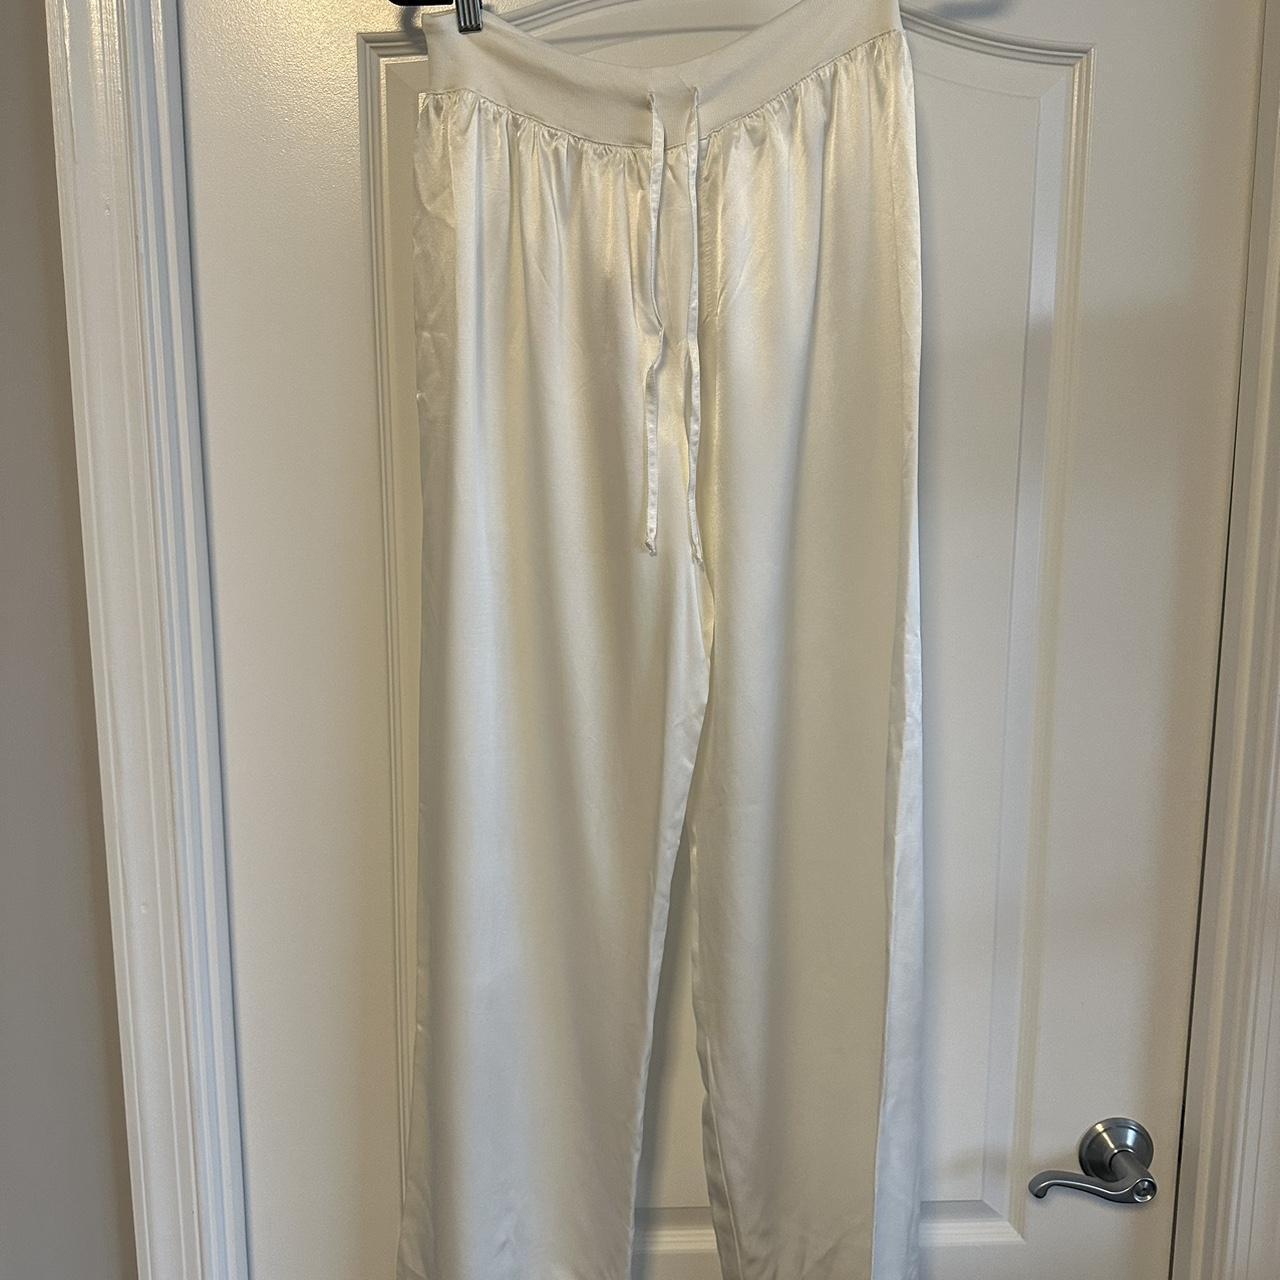 PJ Harlow Women's White Pajamas (2)